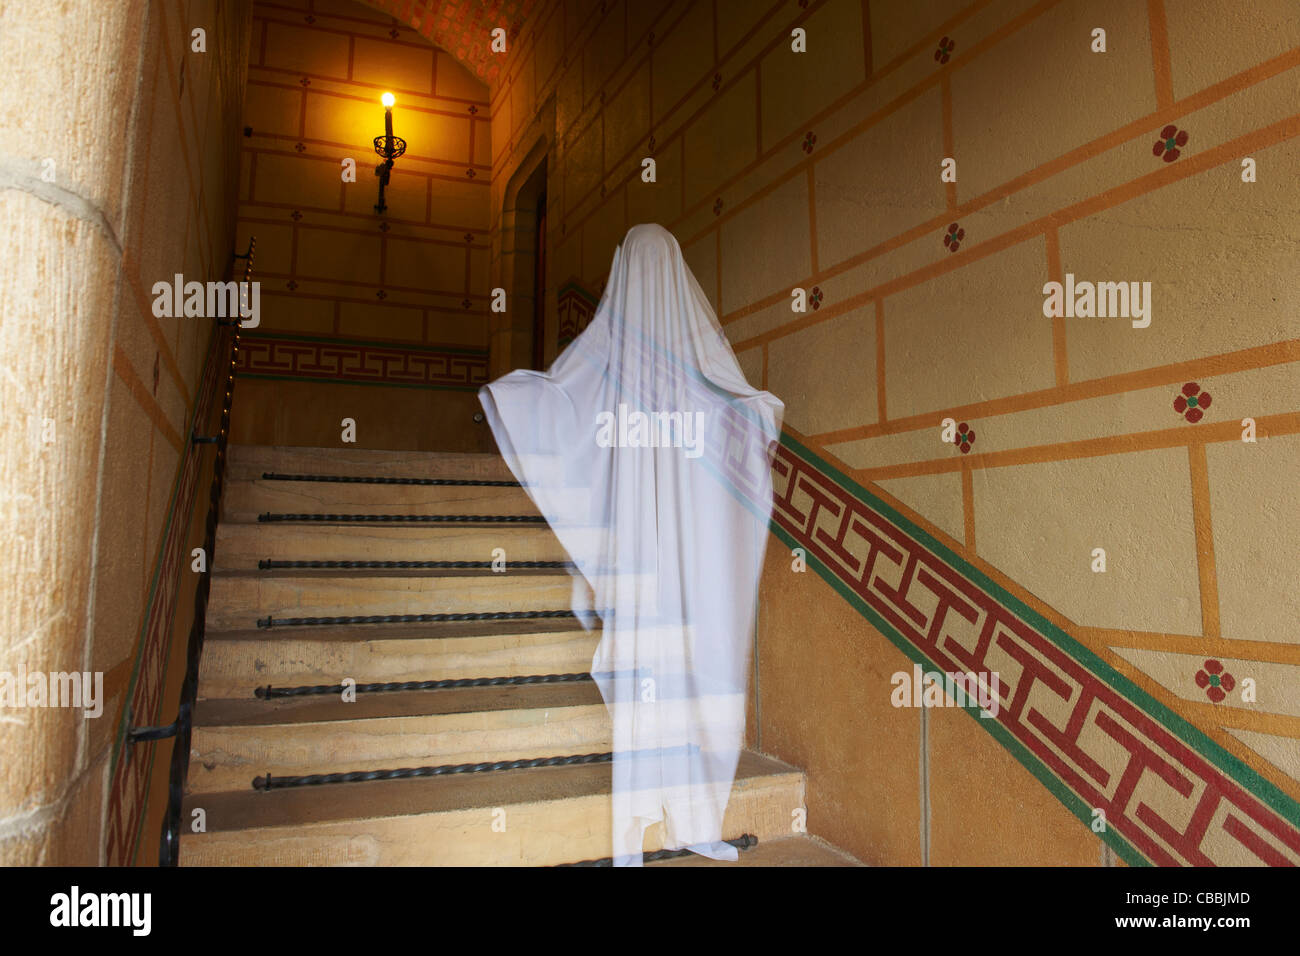 Fantasma en escaleras adornadas flotante Foto de stock